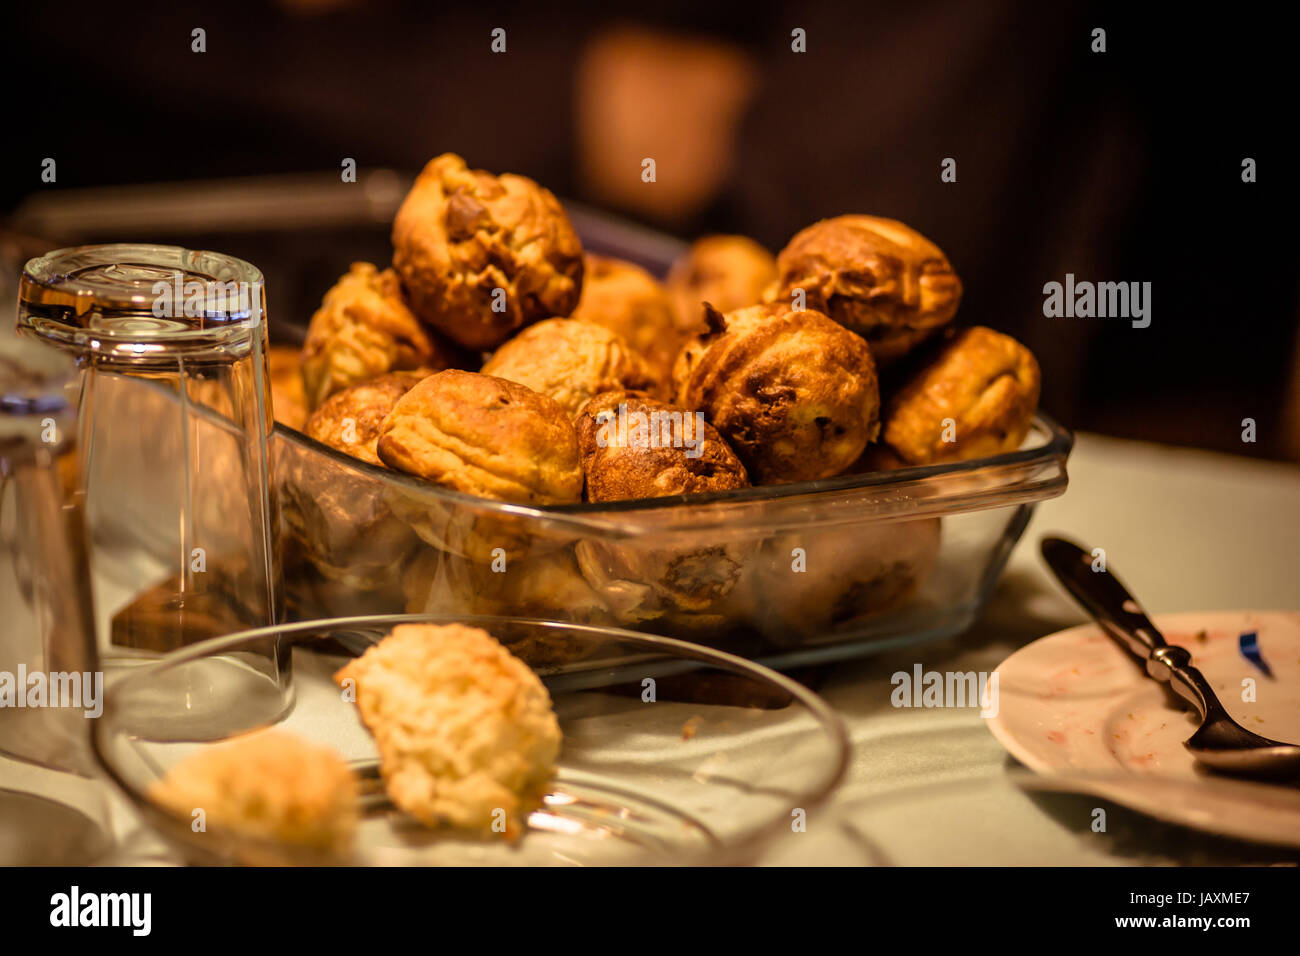 Les beignets sur une table a servi de casse-croûte de Noël Banque D'Images